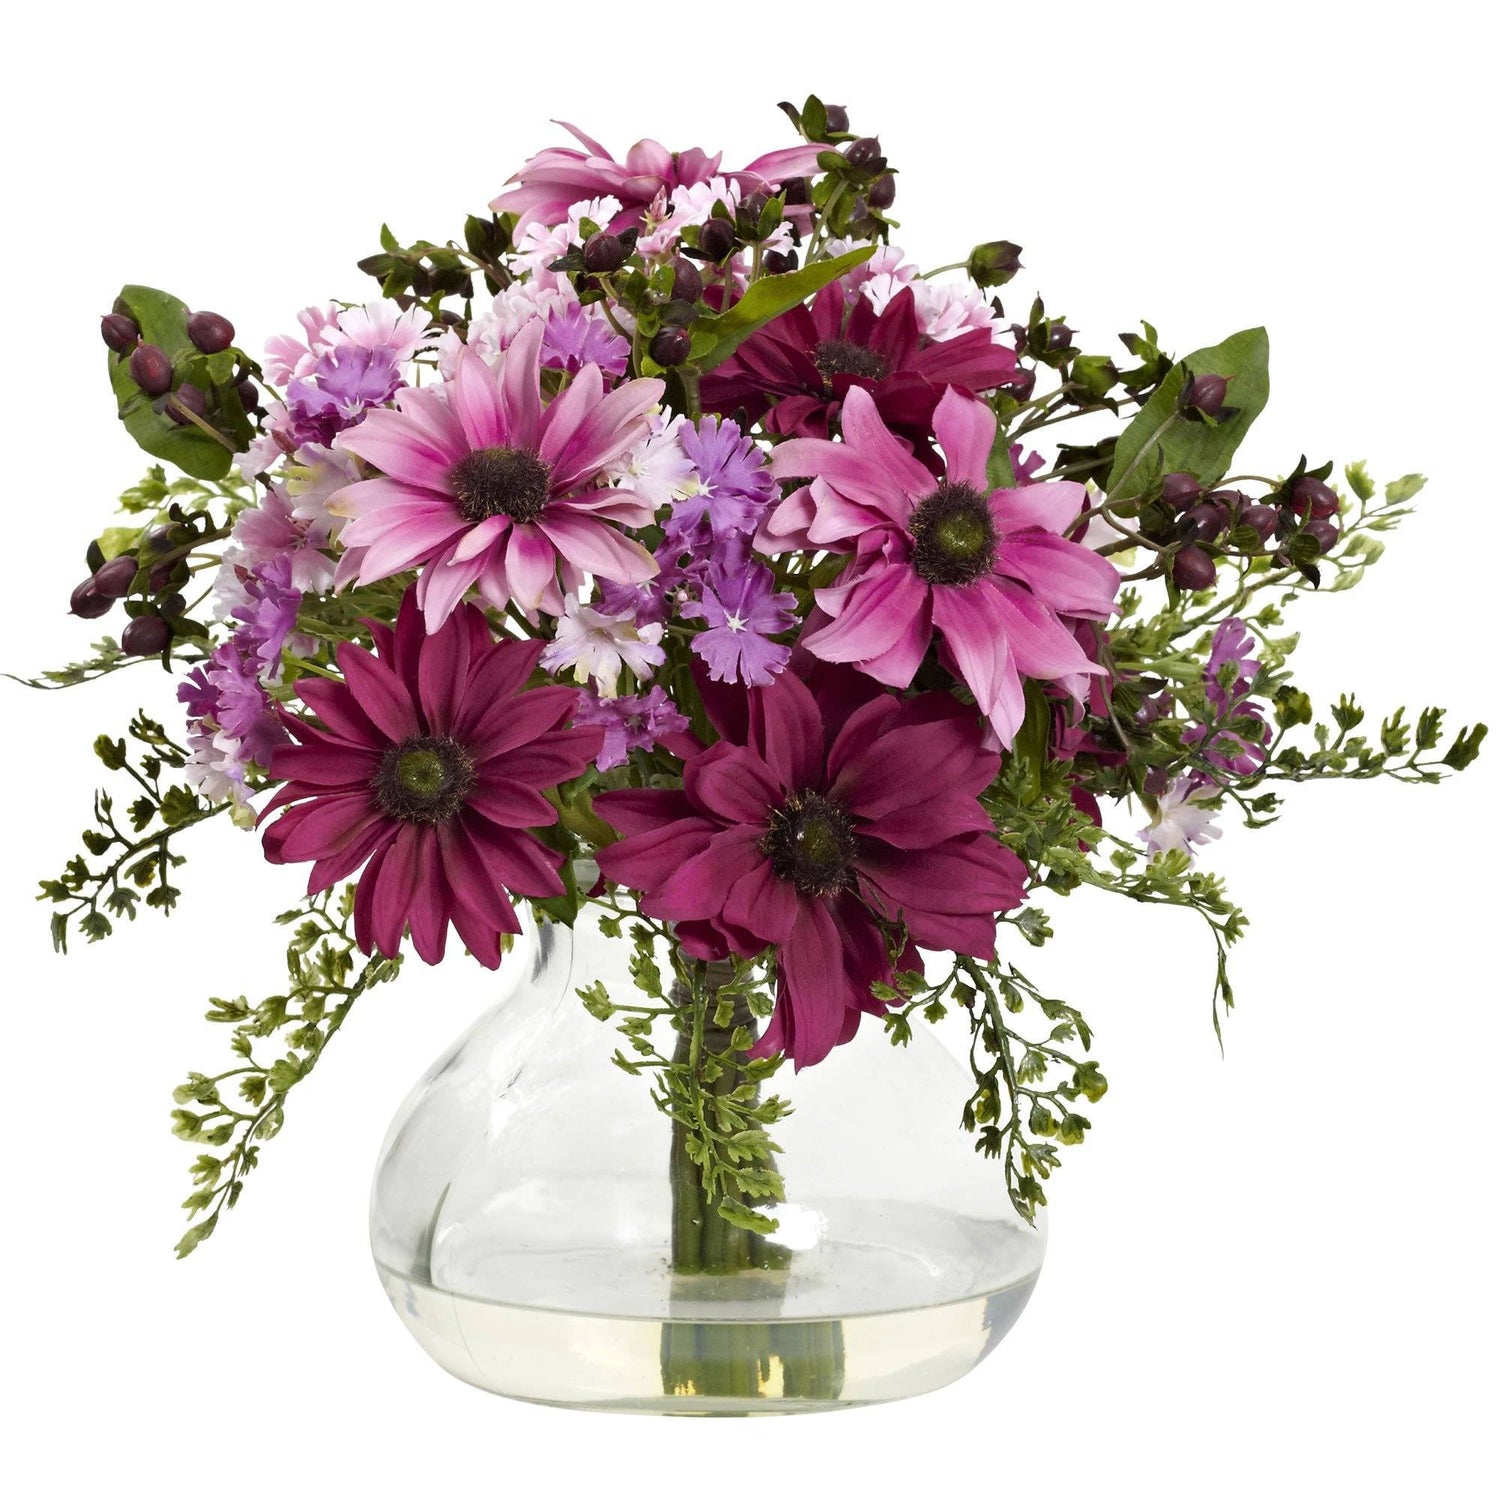 Mixed Daisy Arrangement w/Vase